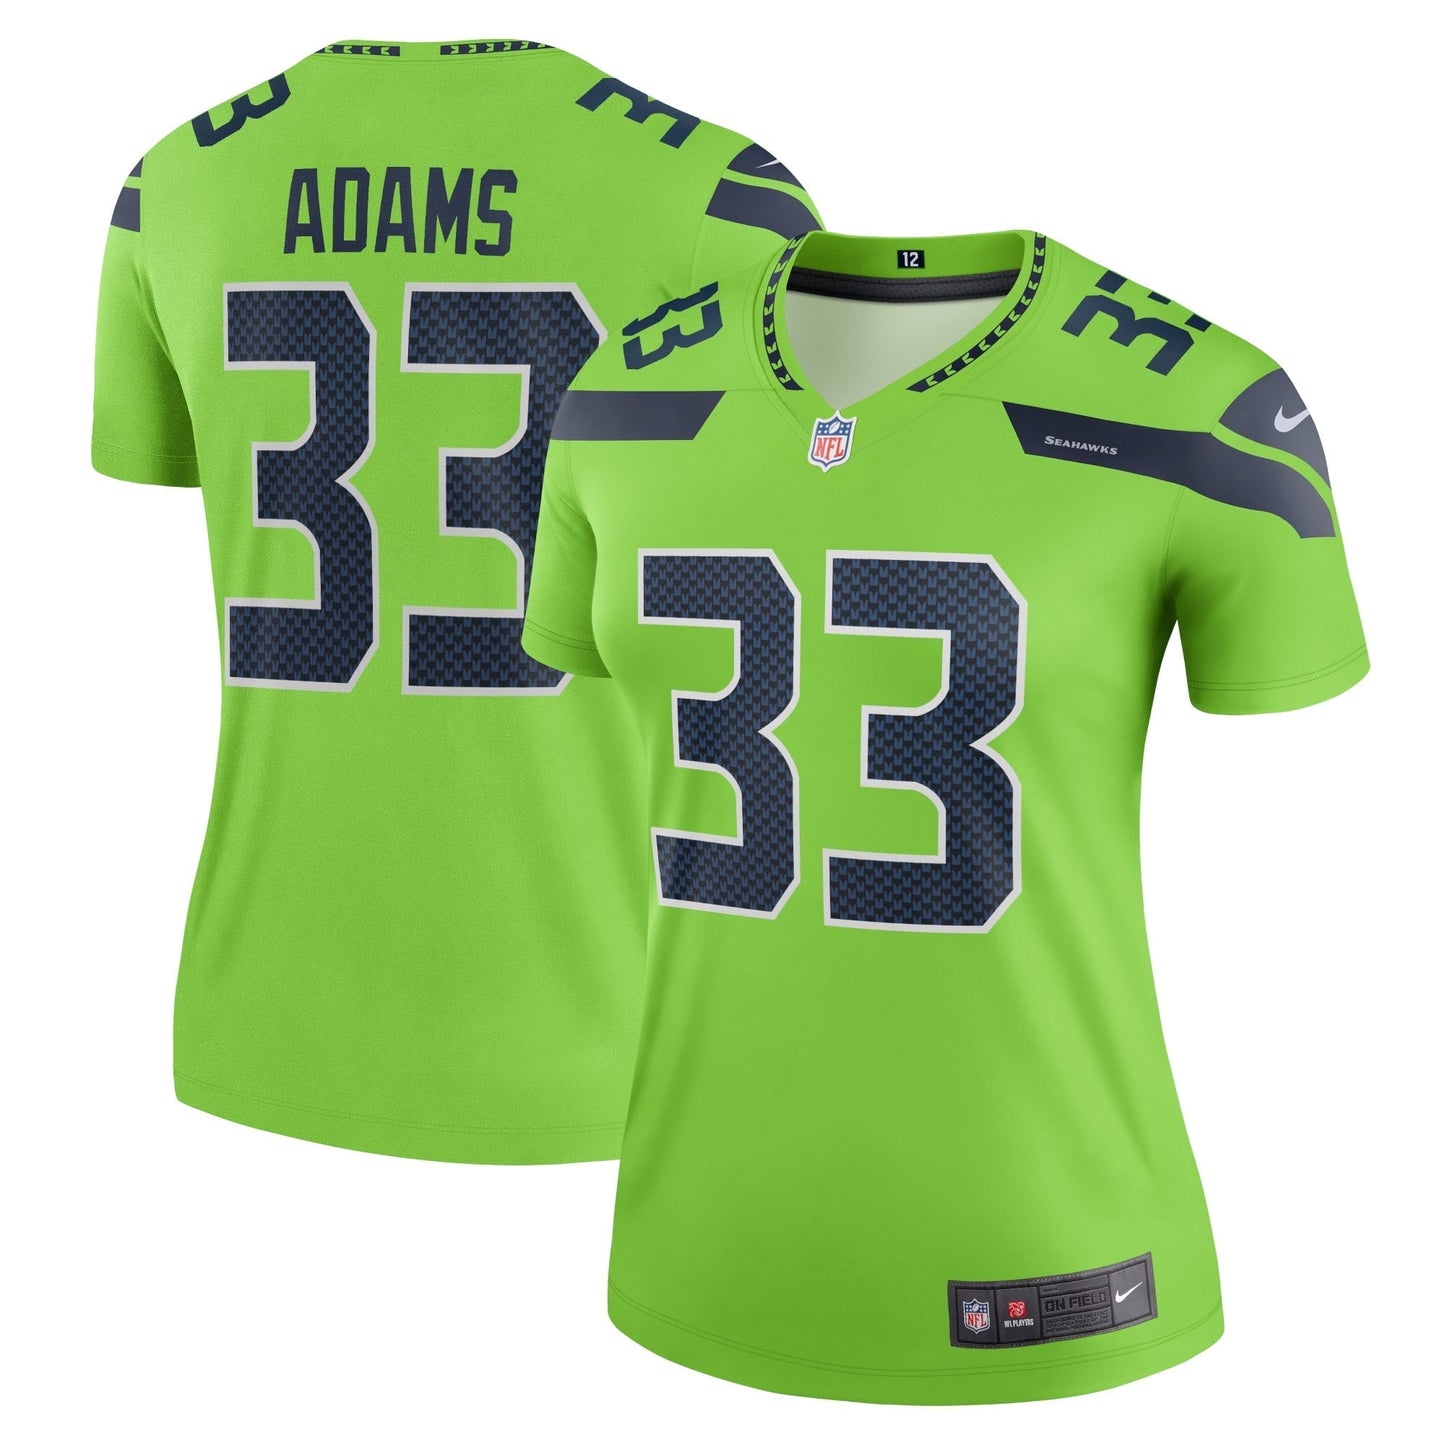 Women's Nike Jamal Adams Neon Green Seattle Seahawks Legend Jersey